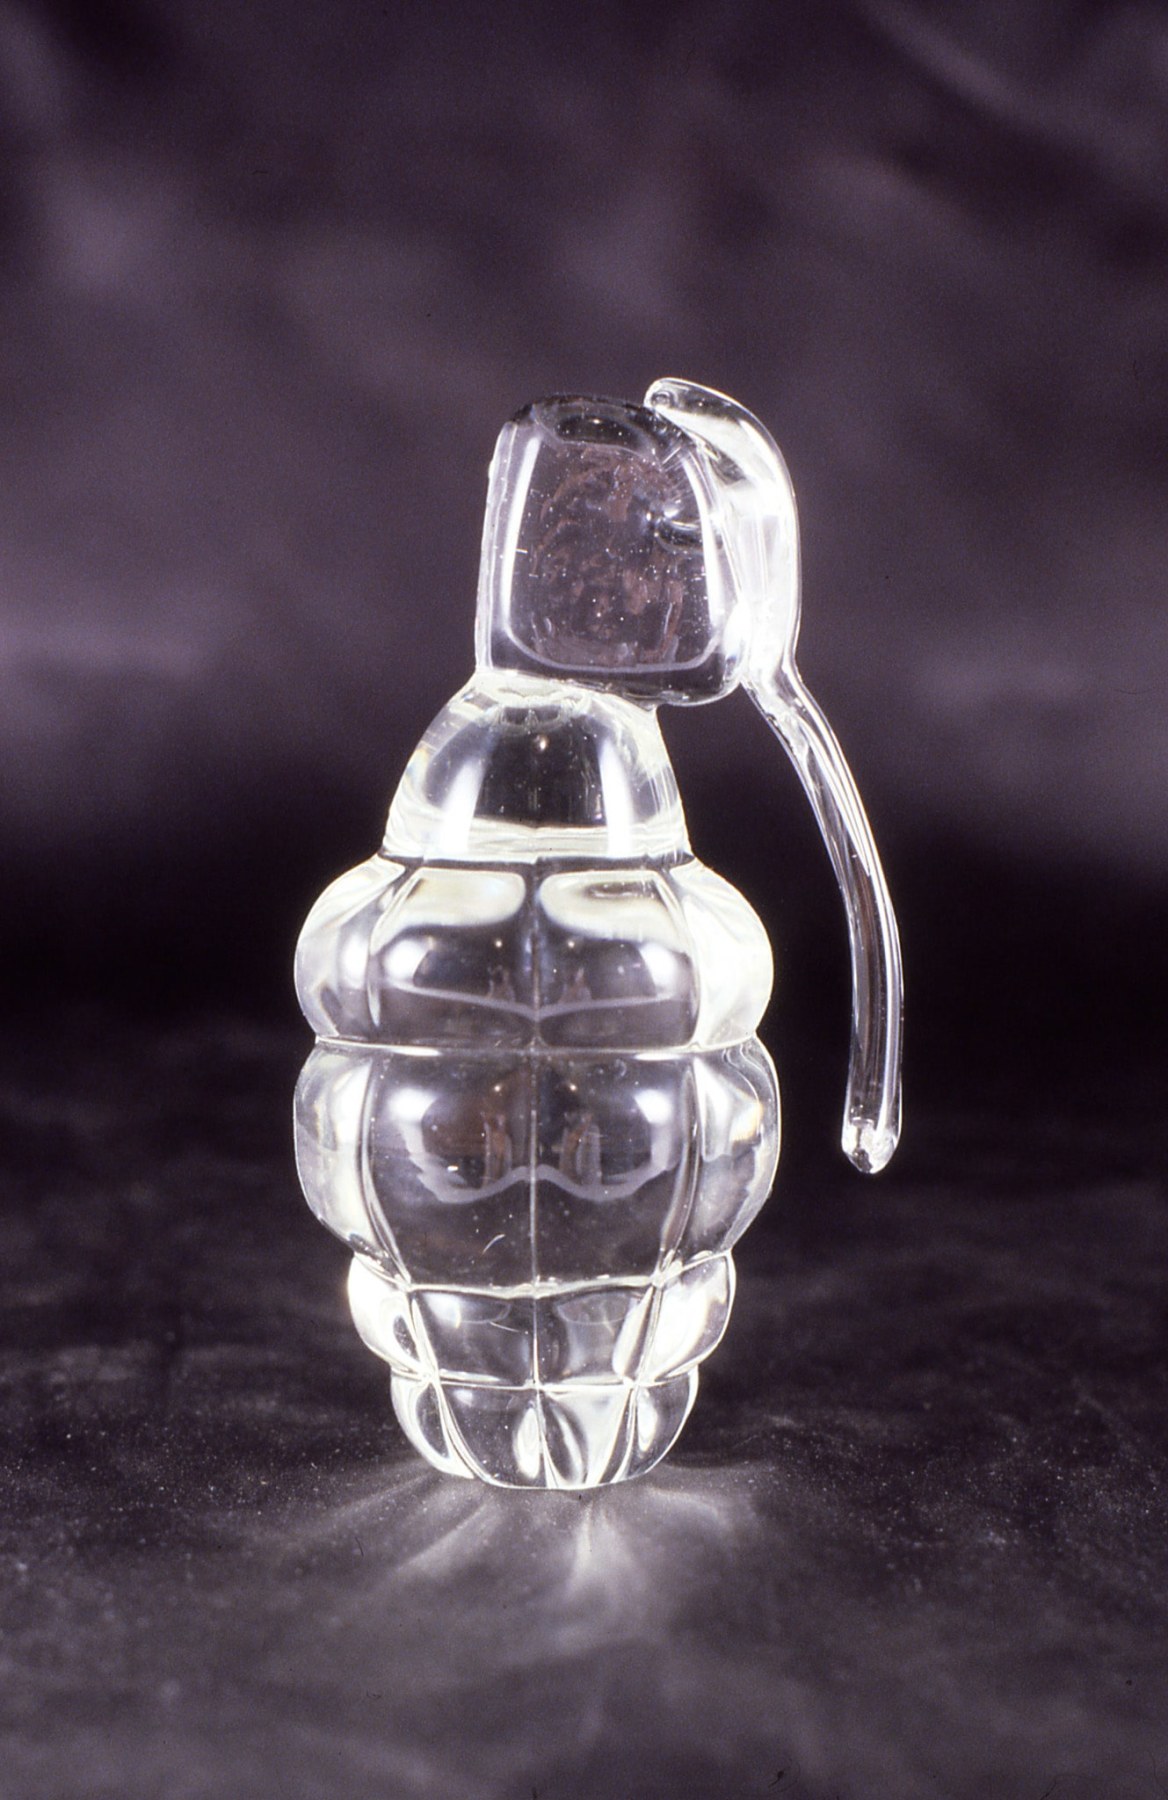 Kristin Oppenheim, Glass Grenade, 1991